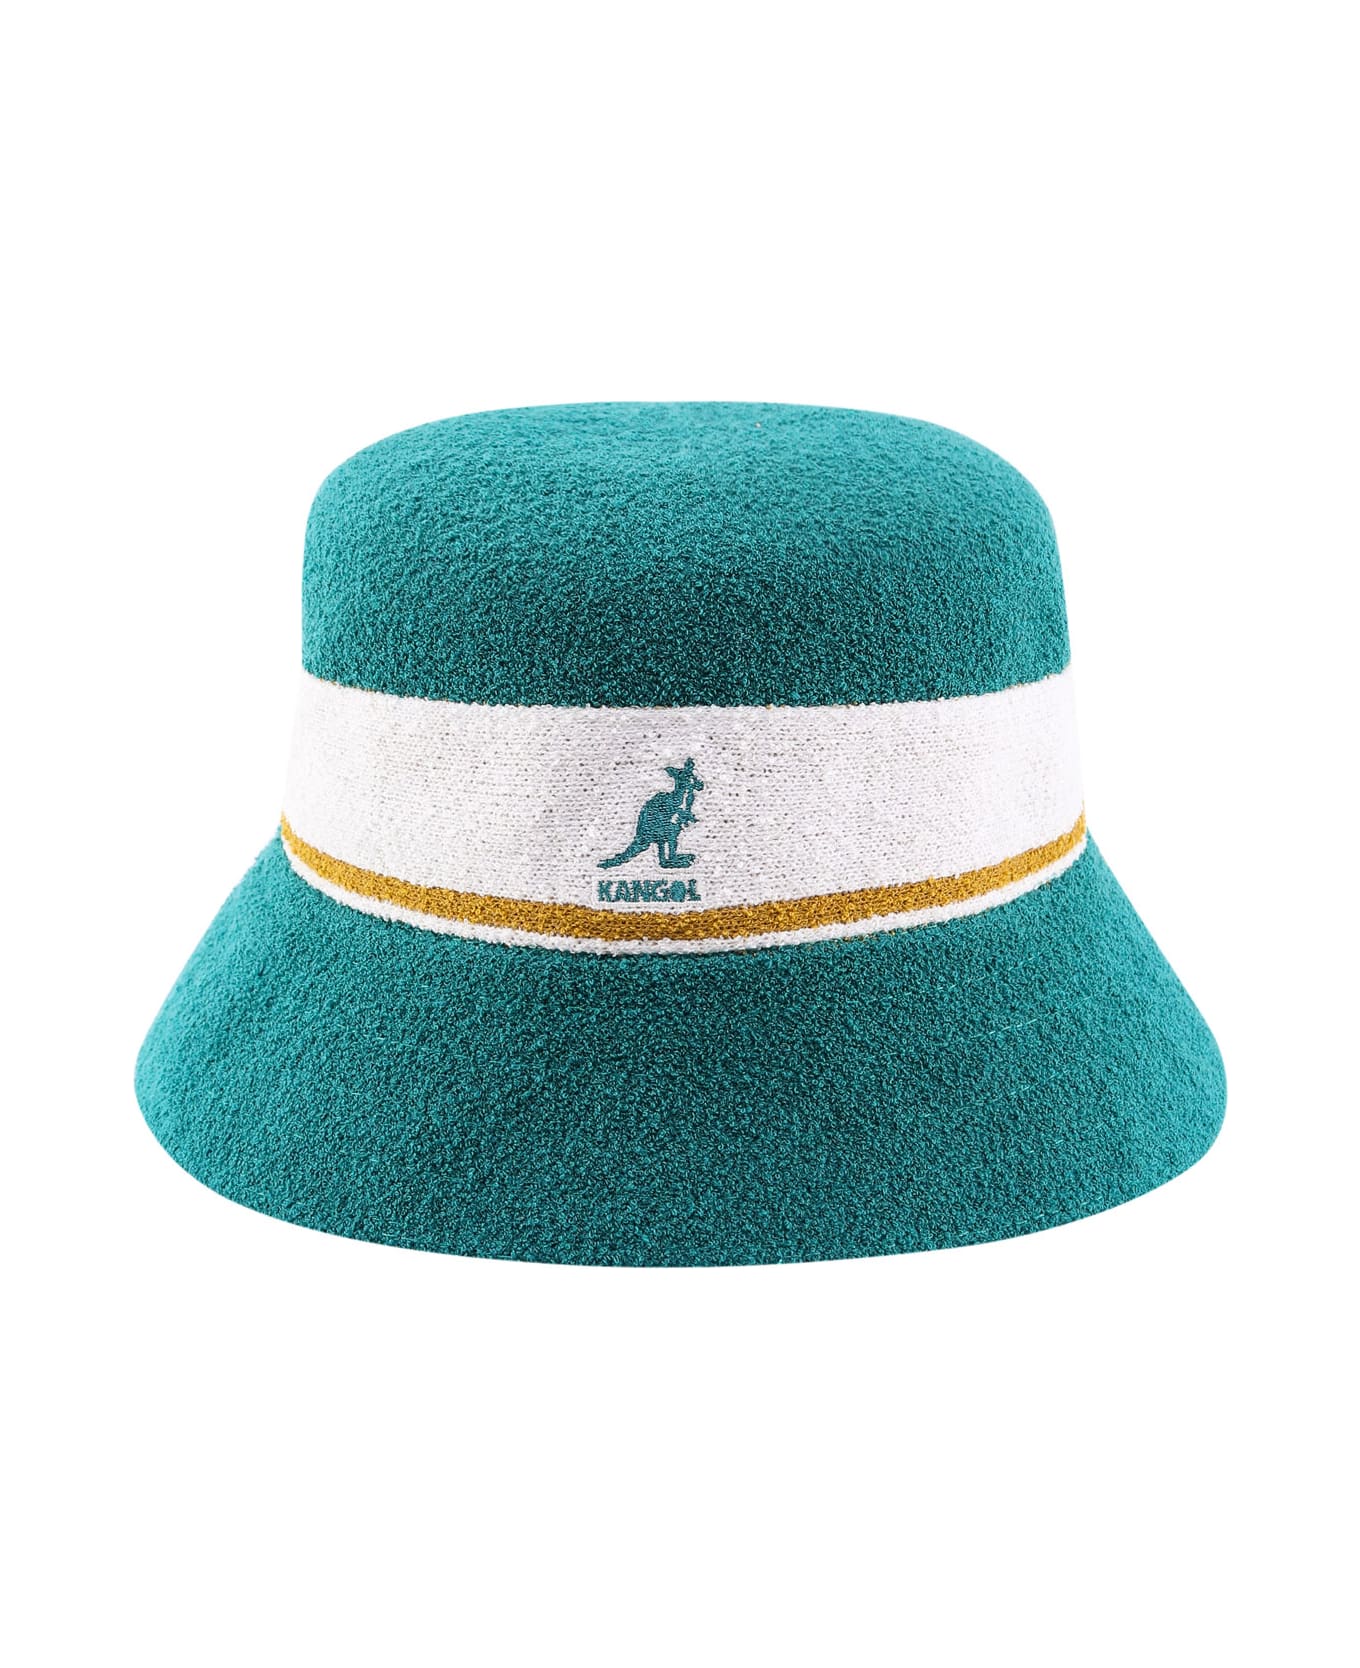 Kangol Hat - Green 帽子